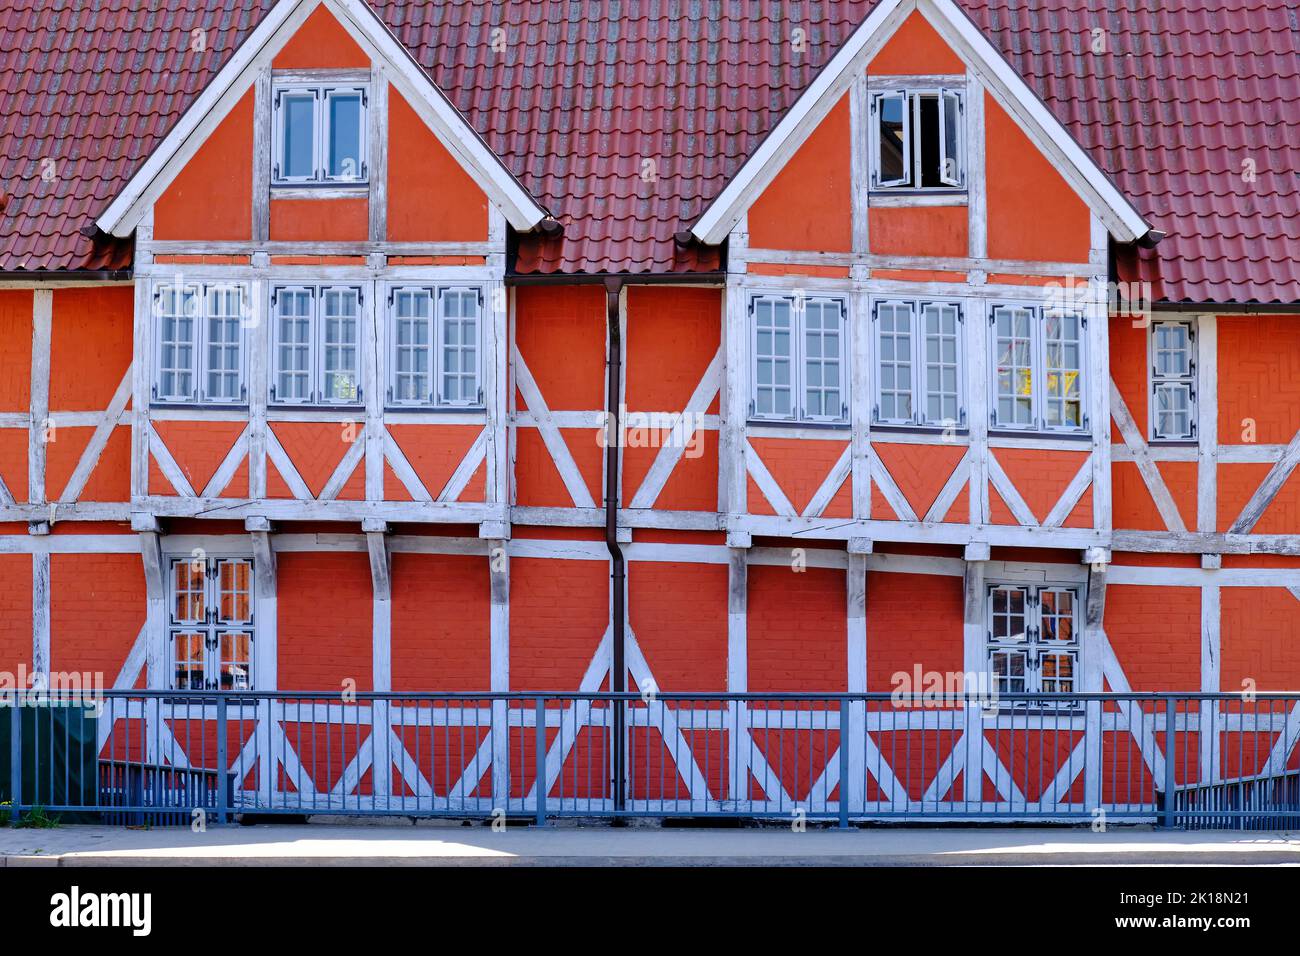 Immagine concettuale e simbolica, concetto dell'edificio a graticcio, illustrato dall'esempio del cosiddetto Gewölbe (la volta), Wismar, Germania. Foto Stock